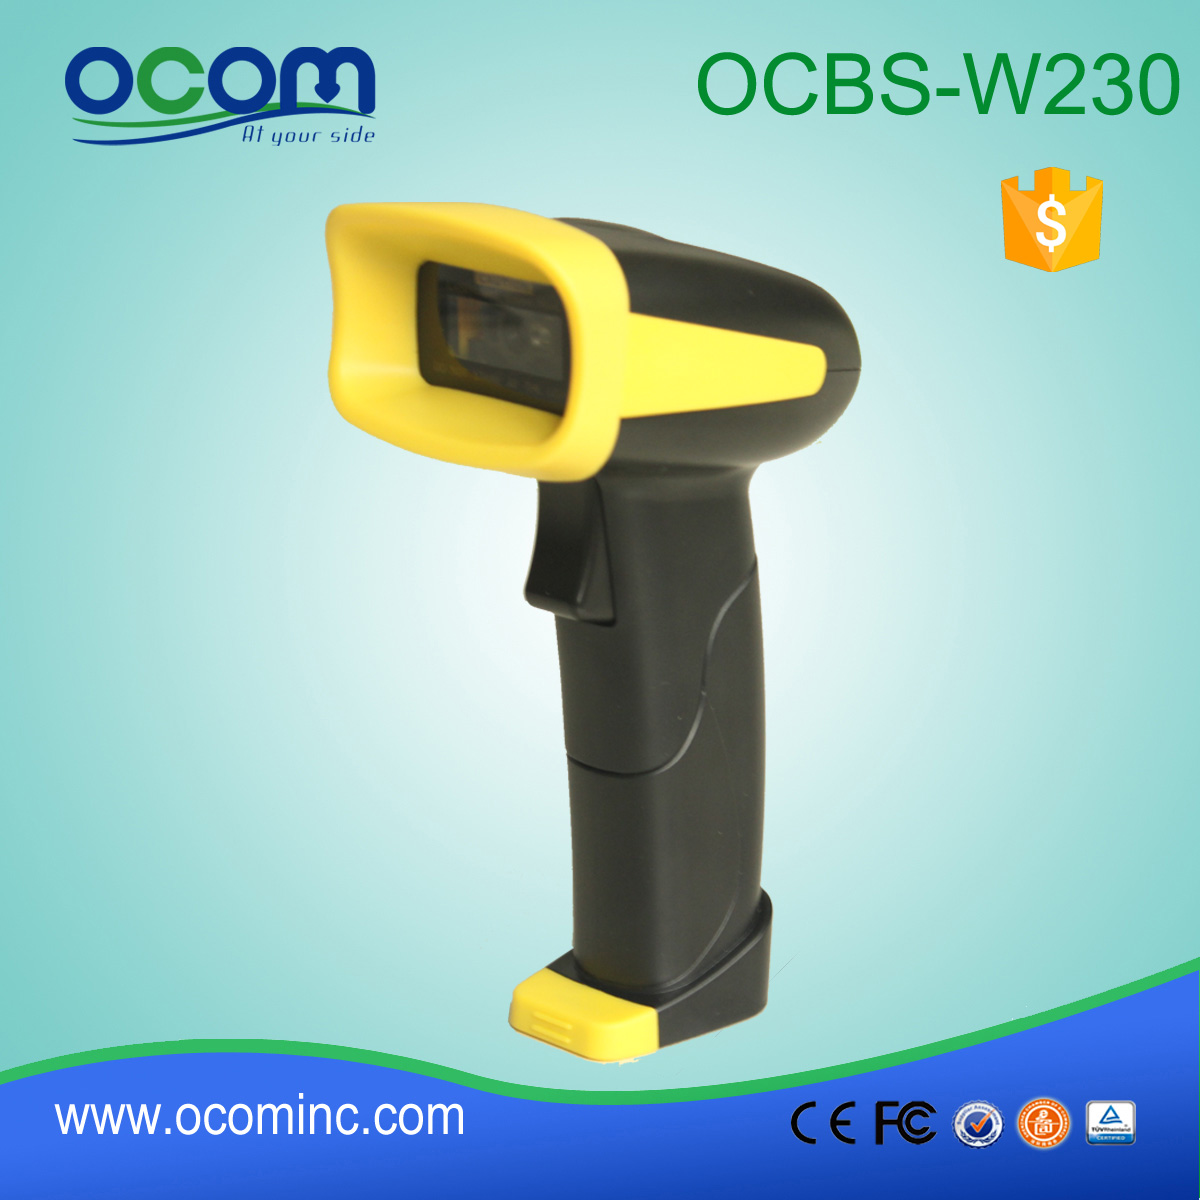 OCBs-W230: Высокоскоростной Bluetooth беспроводной портативный 2D сканер штрих-кода